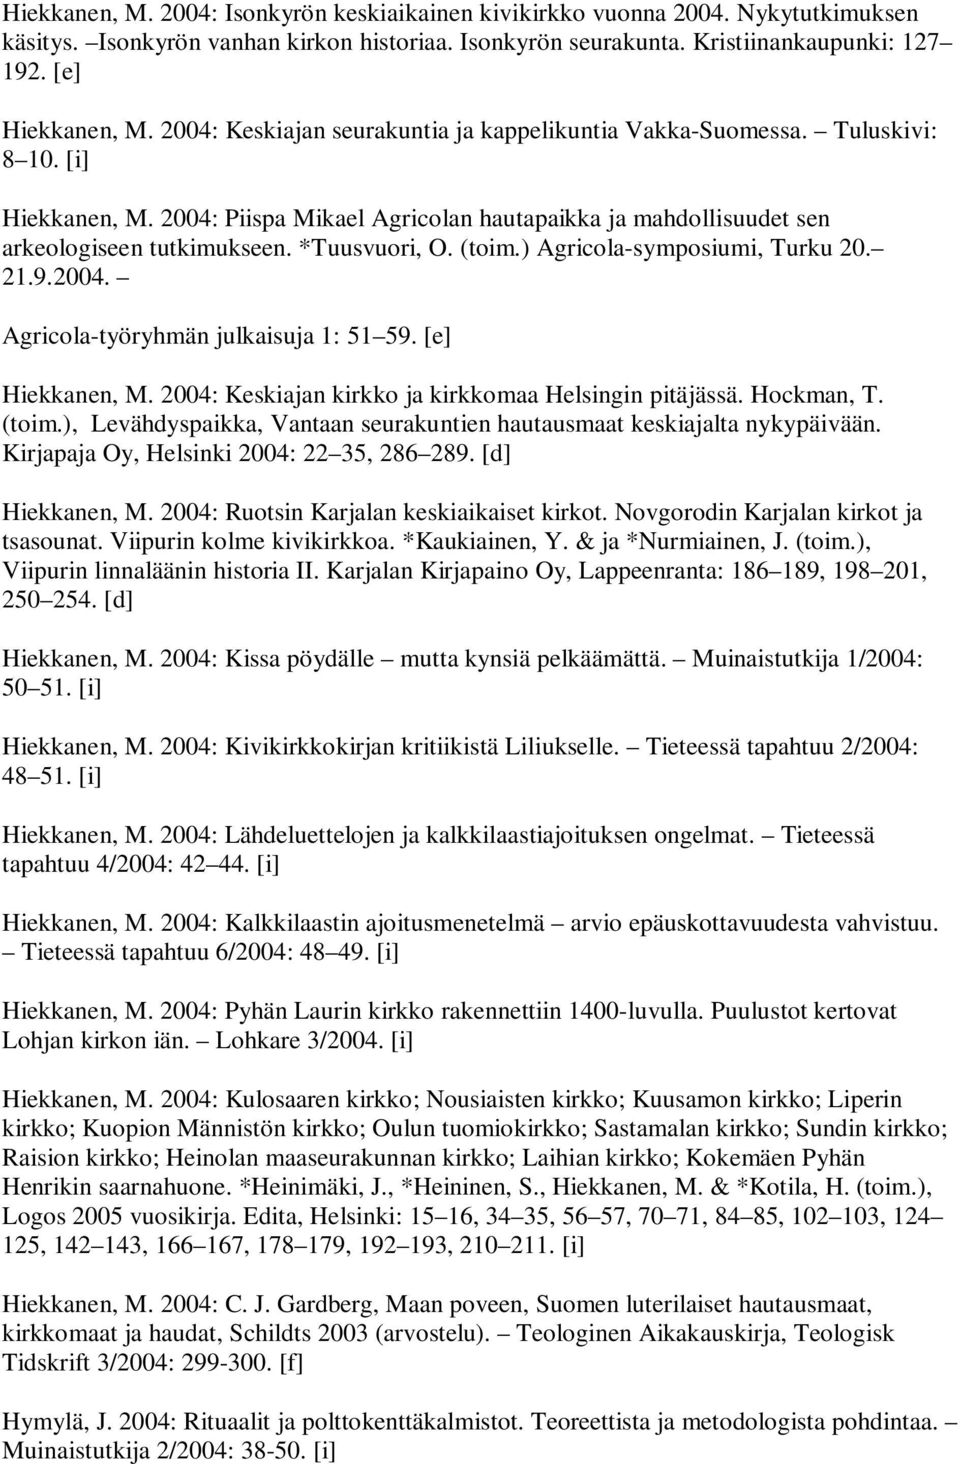 *Tuusvuori, O. (toim.) Agricola-symposiumi, Turku 20. 21.9.2004. Agricola-työryhmän julkaisuja 1: 51 59. [e] Hiekkanen, M. 2004: Keskiajan kirkko ja kirkkomaa Helsingin pitäjässä. Hockman, T. (toim.), Levähdyspaikka, Vantaan seurakuntien hautausmaat keskiajalta nykypäivään.